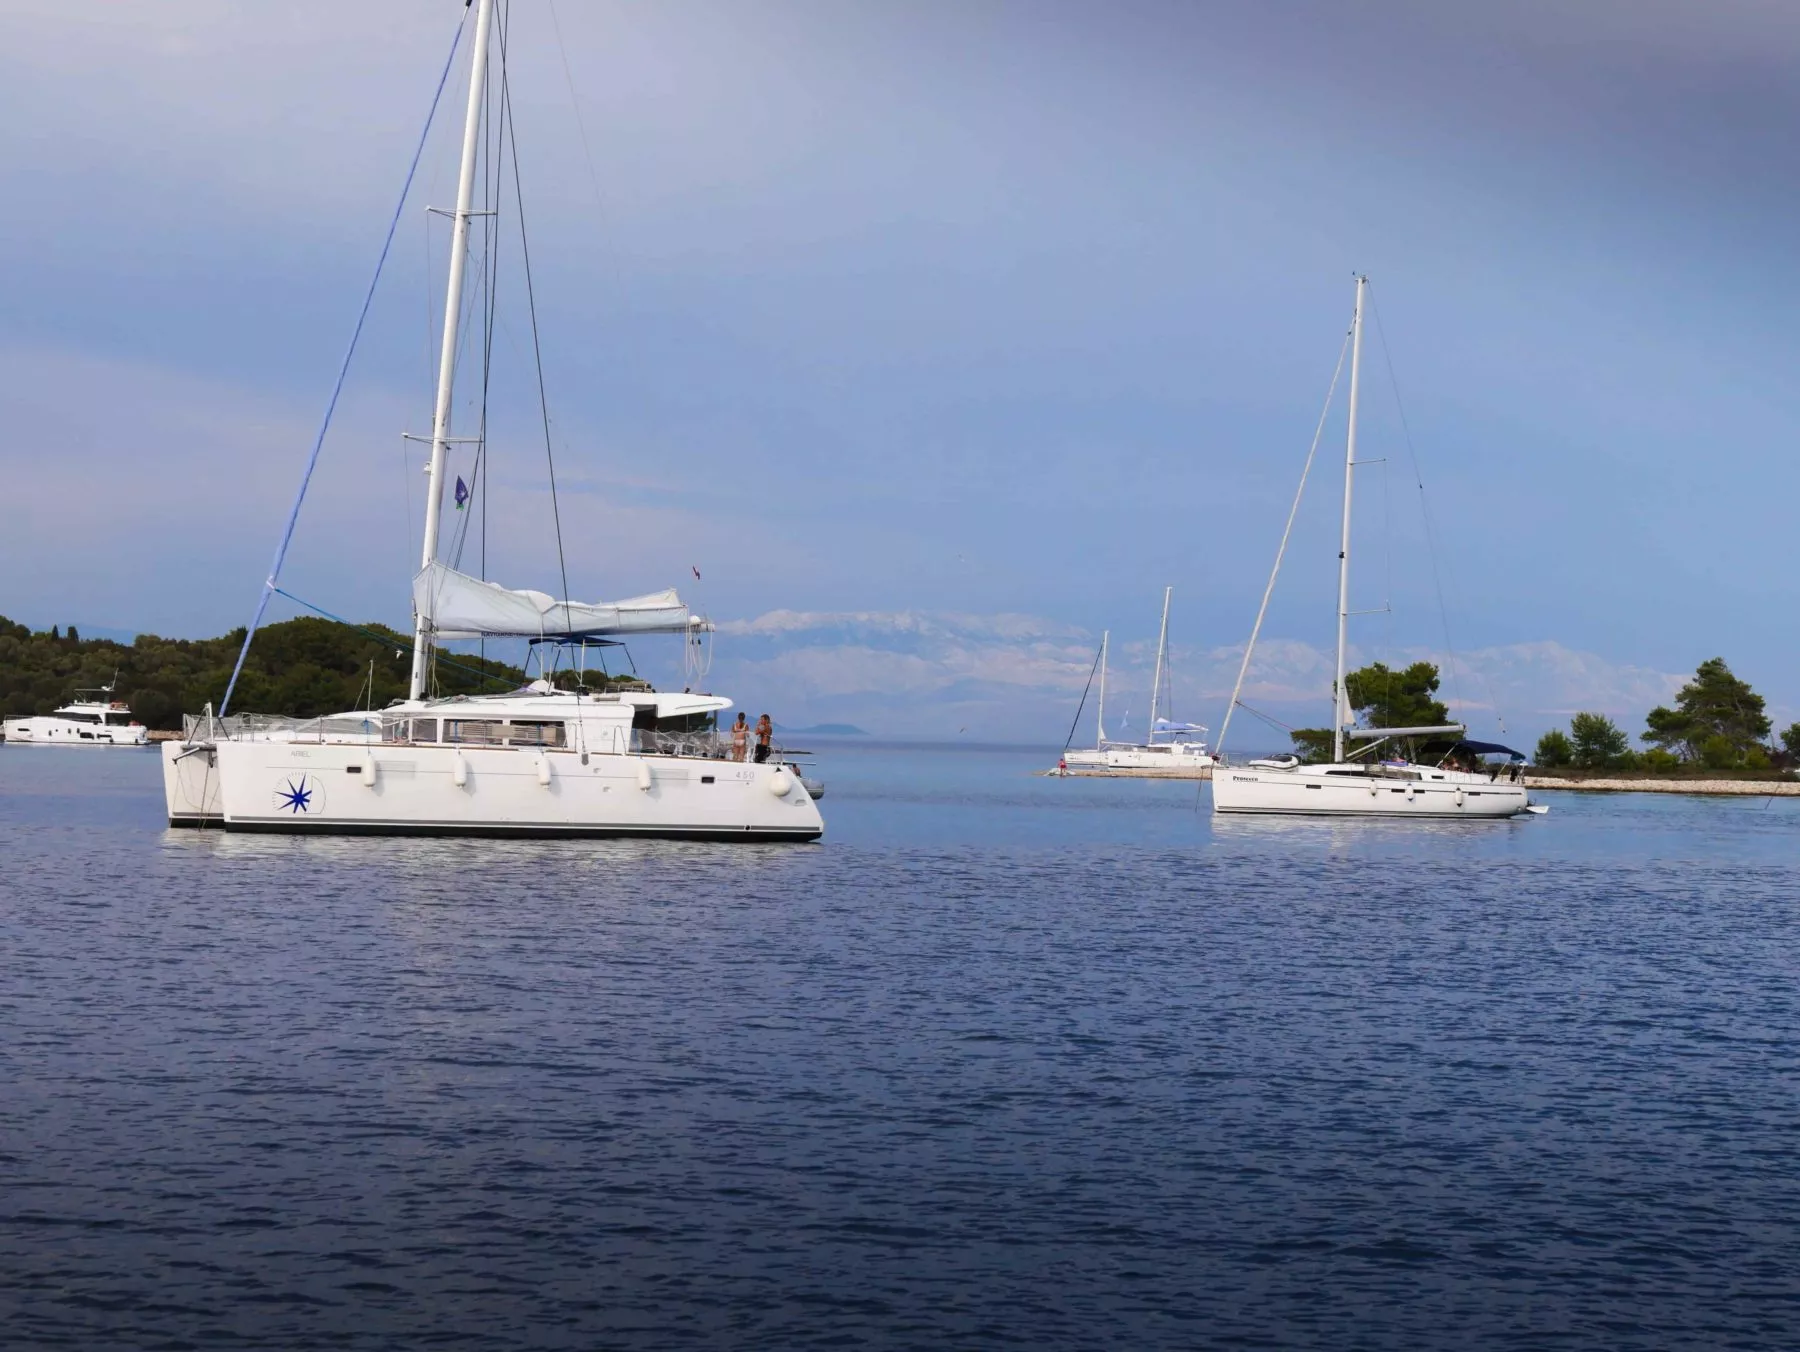 Zwei Segelboote ankerten in der Nähe einer kleinen Insel mit üppigem Grün in ruhigem blauen Wasser, unter einem klaren Himmel mit fernen Bergen im Hintergrund, bereit für eine Segelreise.